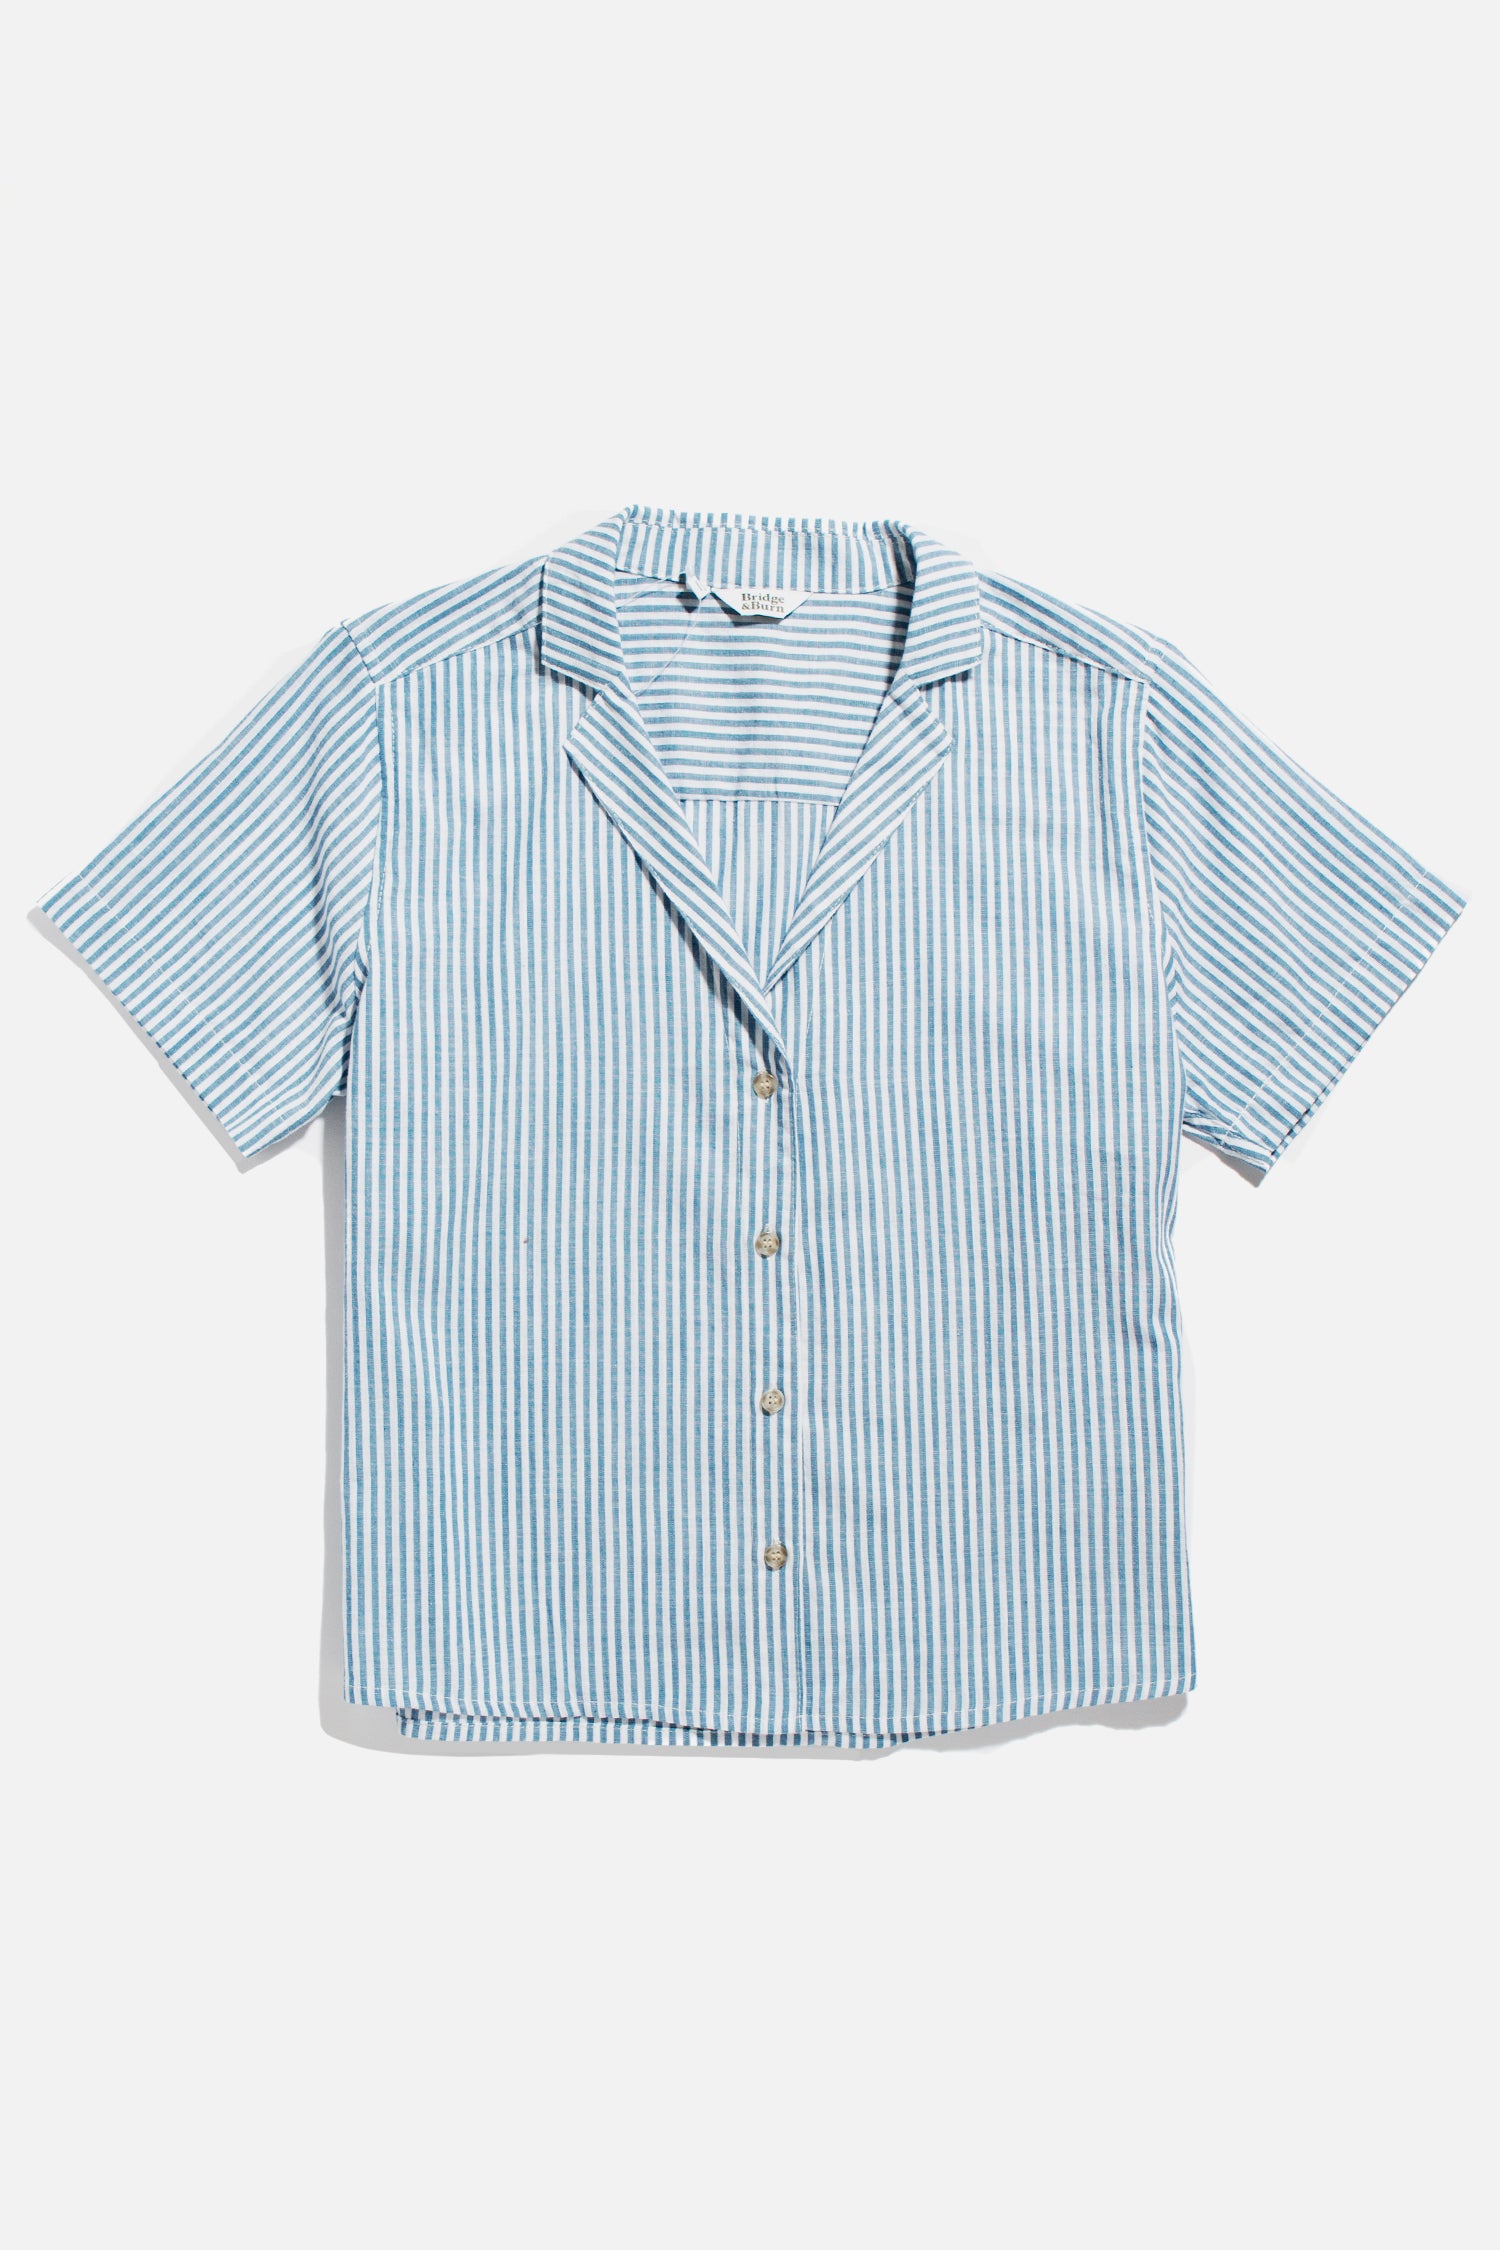 Mila Cropped Shirt / Blue Stripe